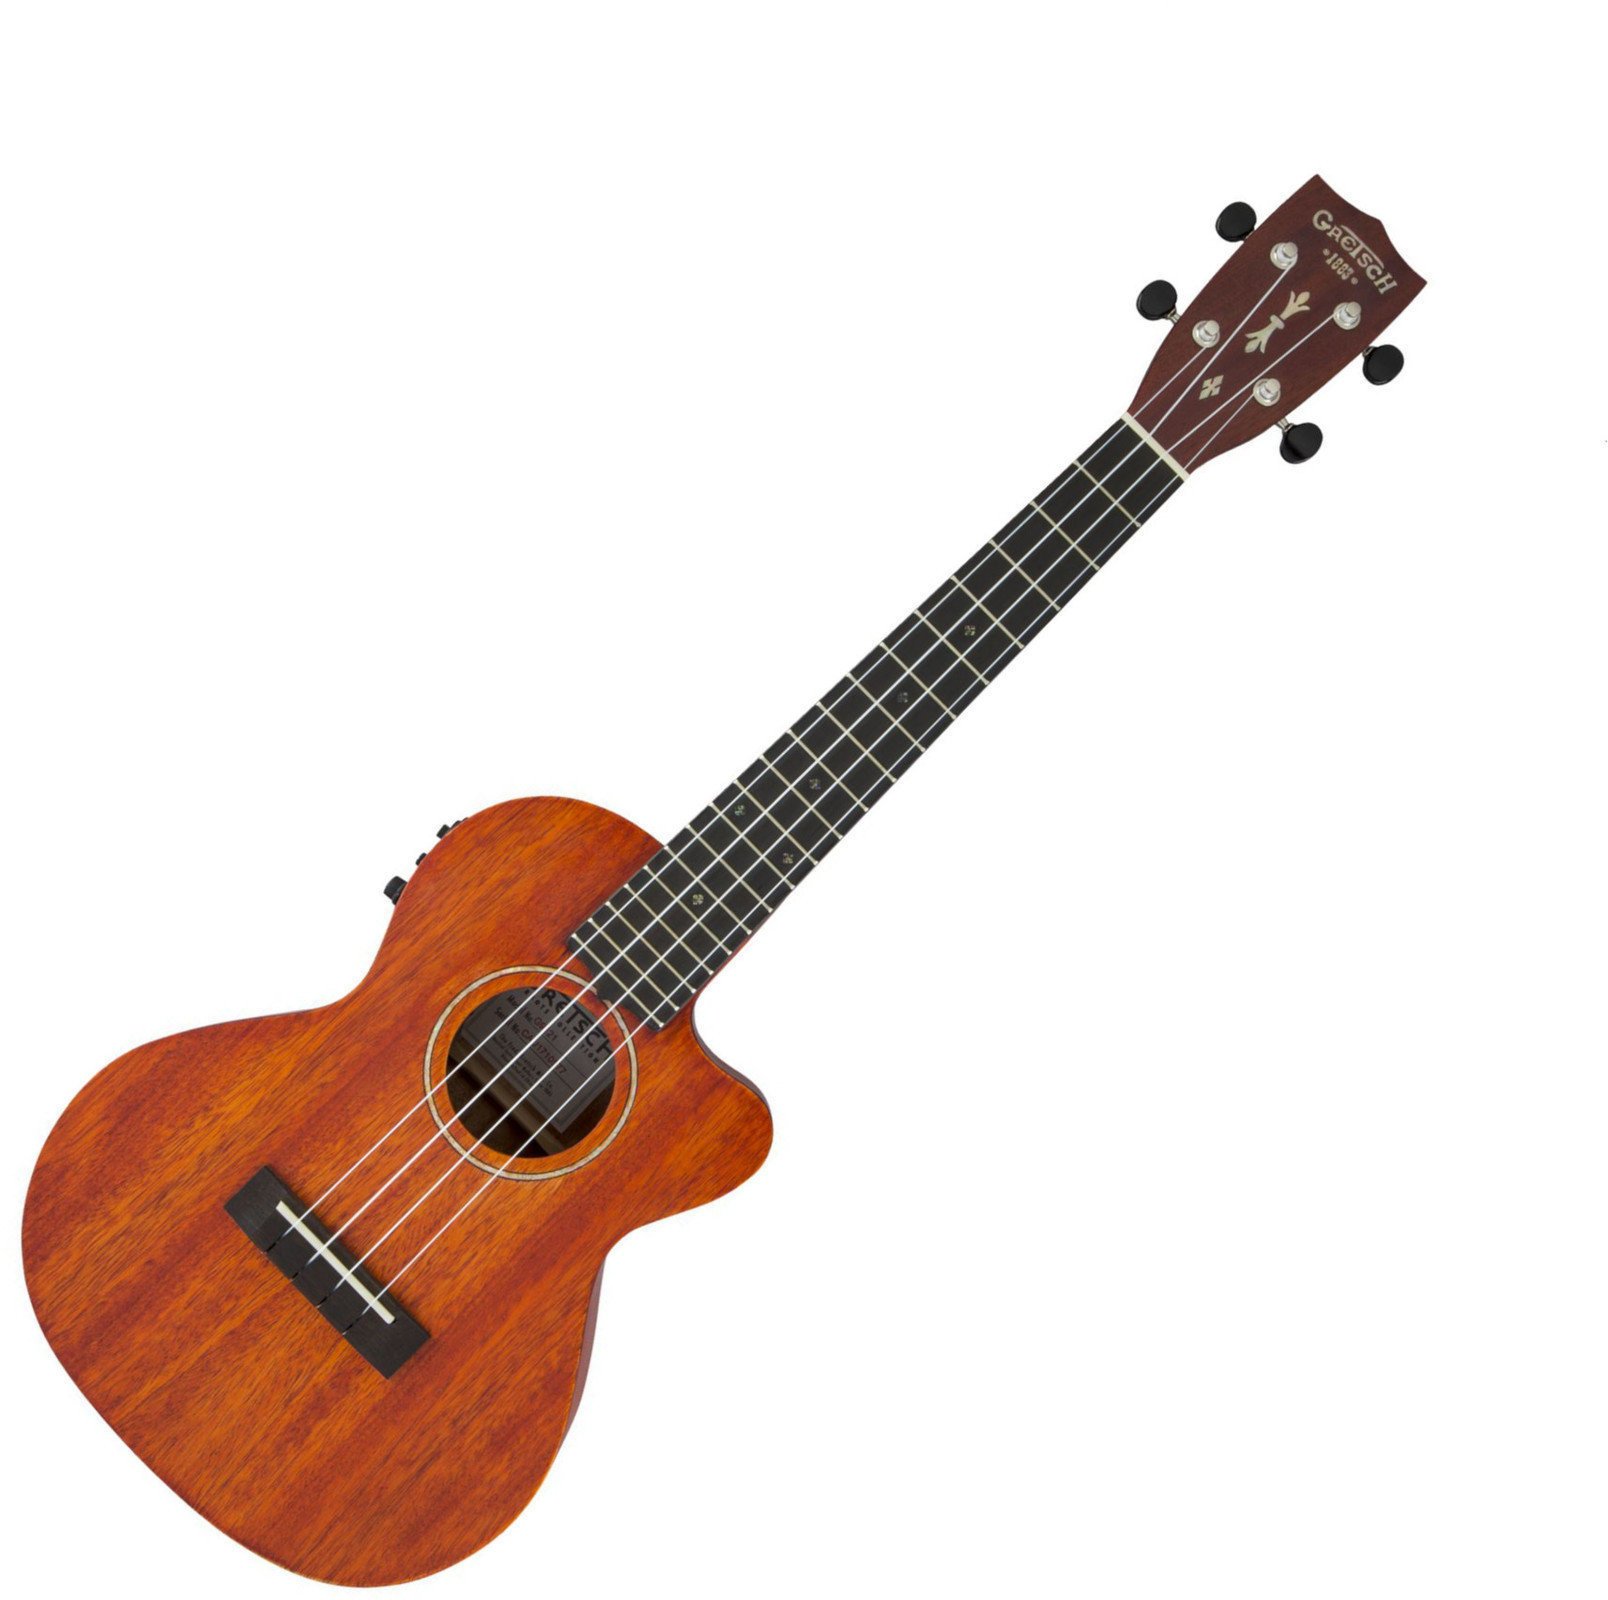 Tenor ukulele Gretsch G9121-ACE Tenor ukulele Honey Mahogany Stain